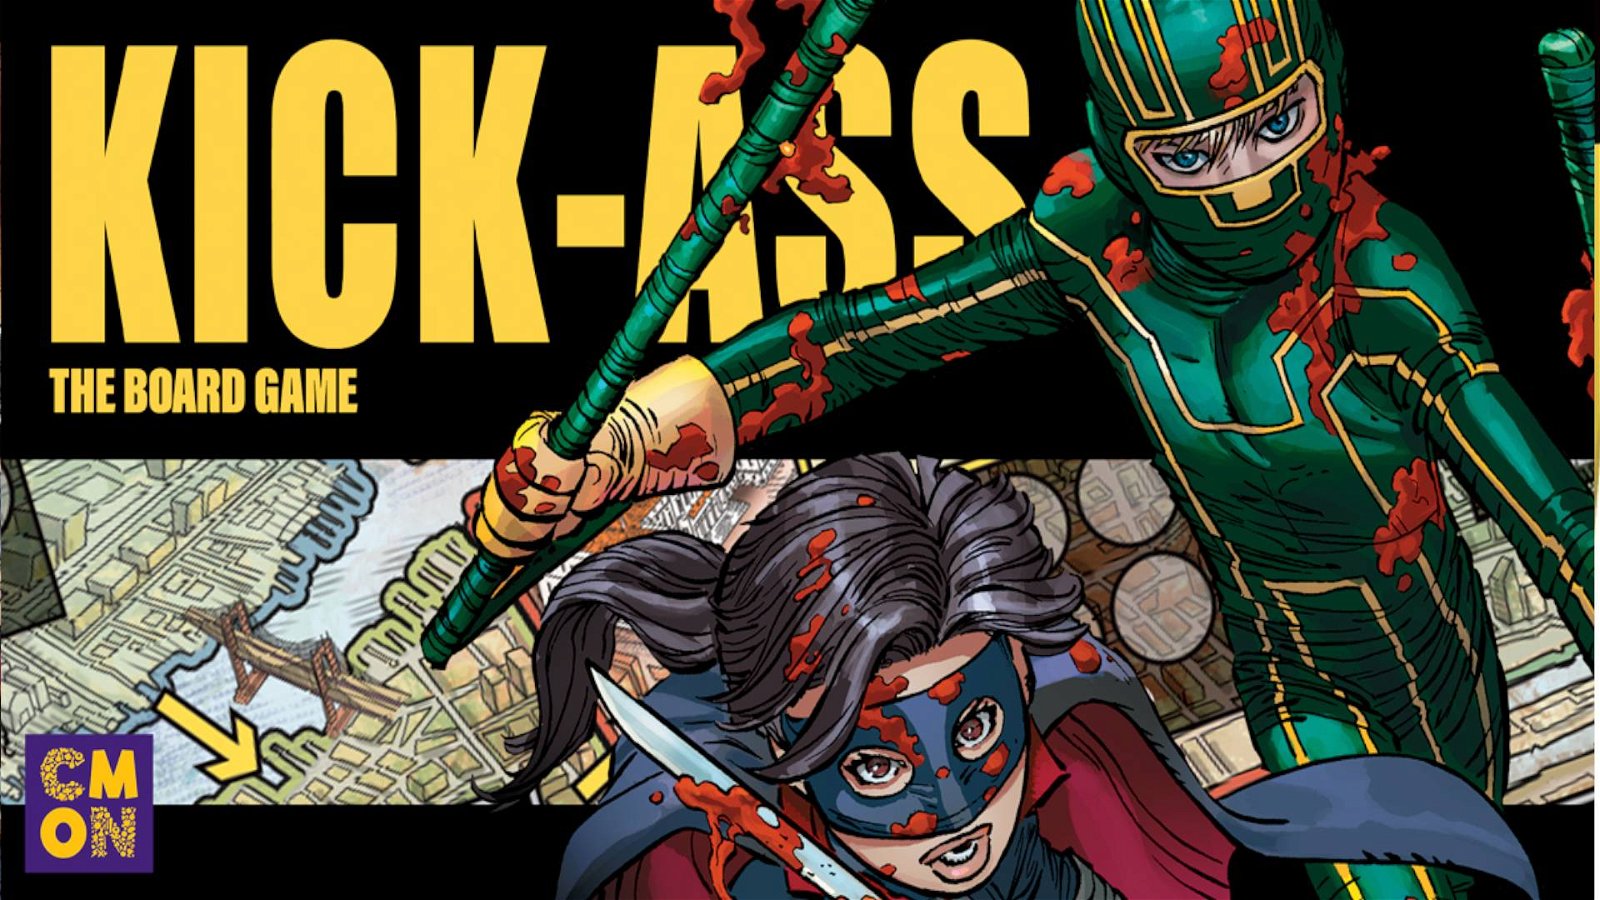 Immagine di Kick-Ass il gioco in scatola: la recensione. Supereroi contro le forze del male!